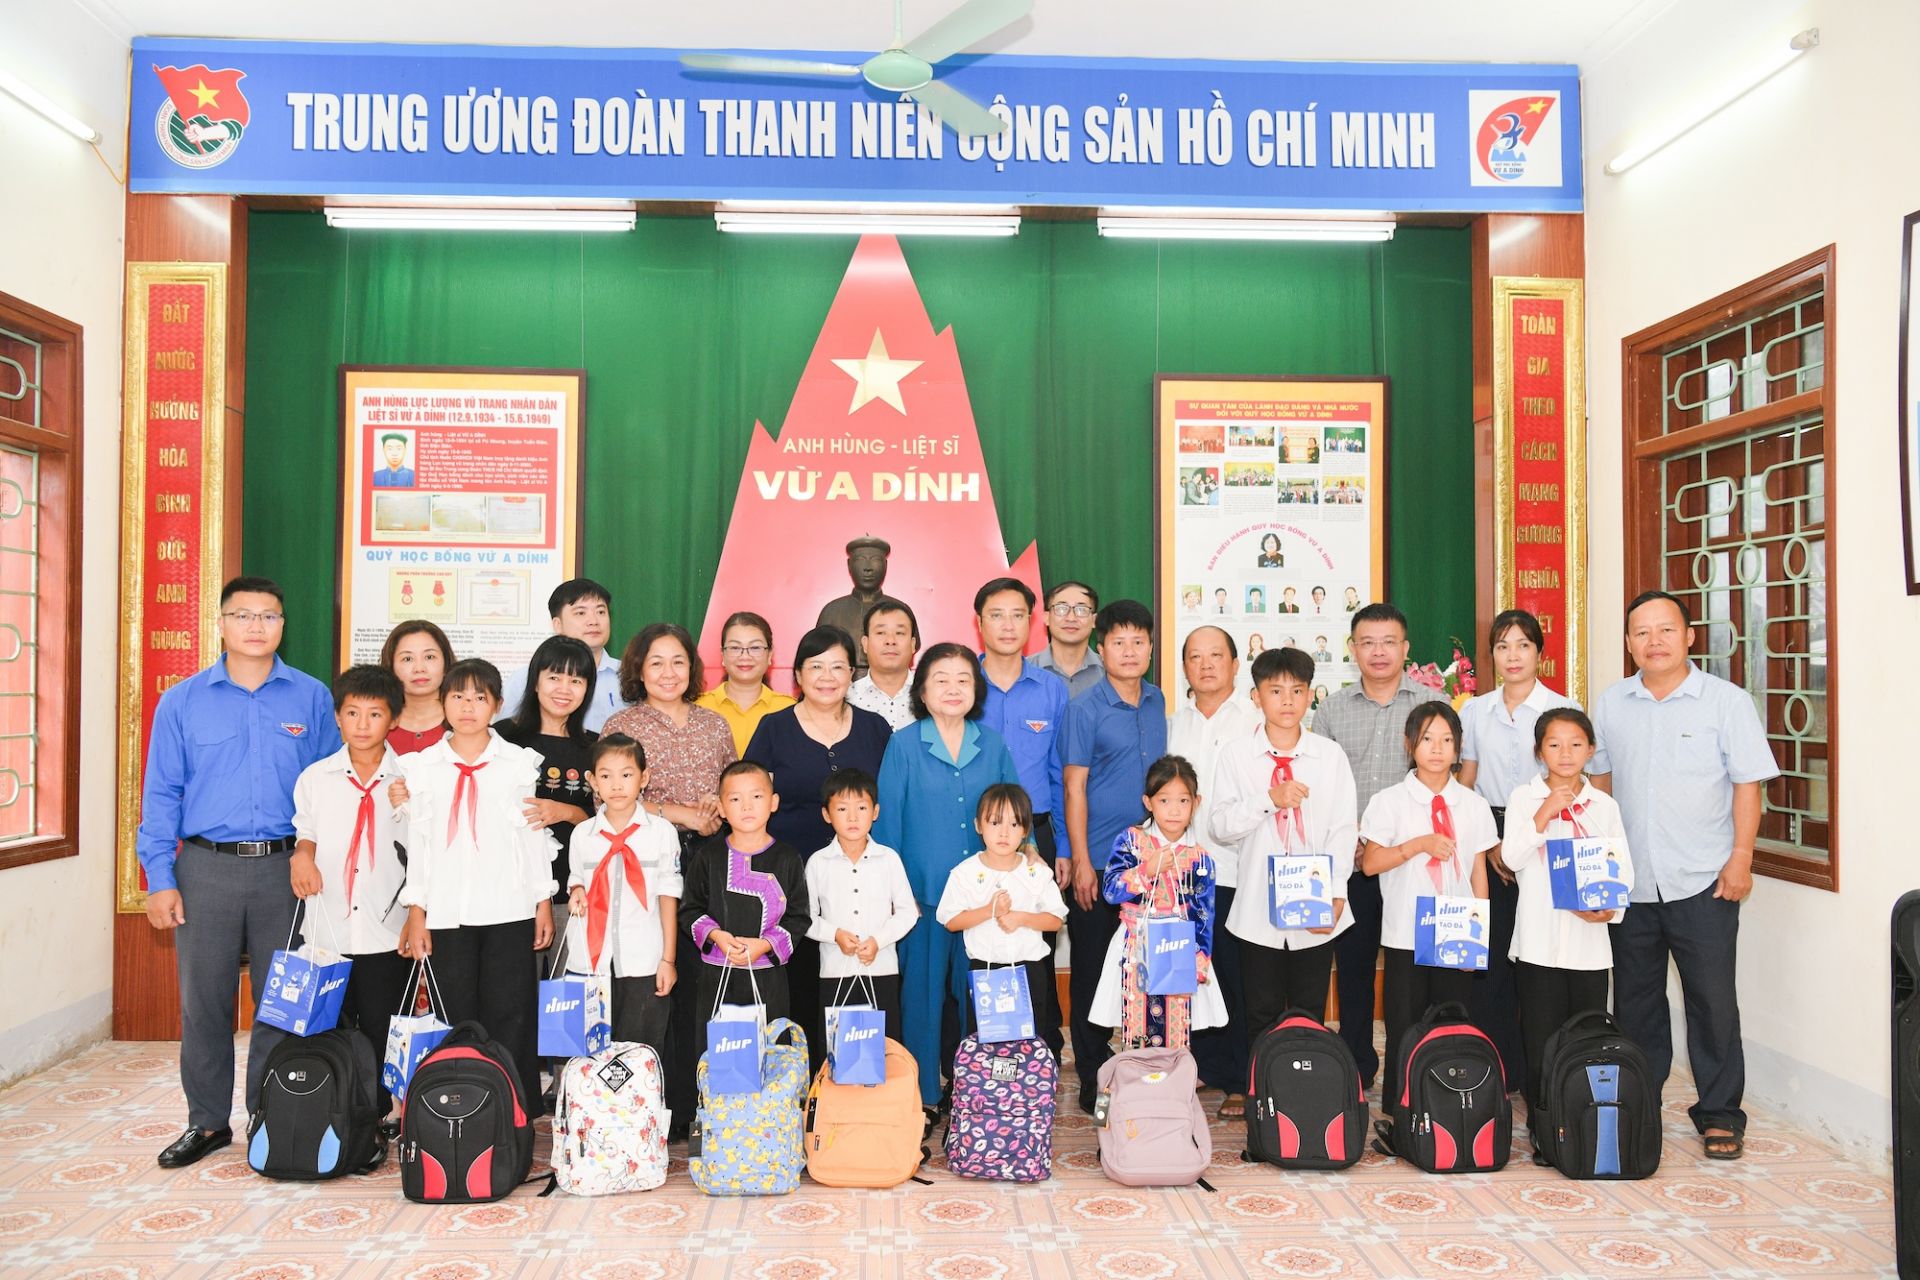 Đoàn đại biểu thăm Nhà lưu niệm anh hùng liệt sĩ Vừ A Dính và tặng quà cho các bạn học sinh có hoàn cảnh khó khăn của xã Pú Nhung.